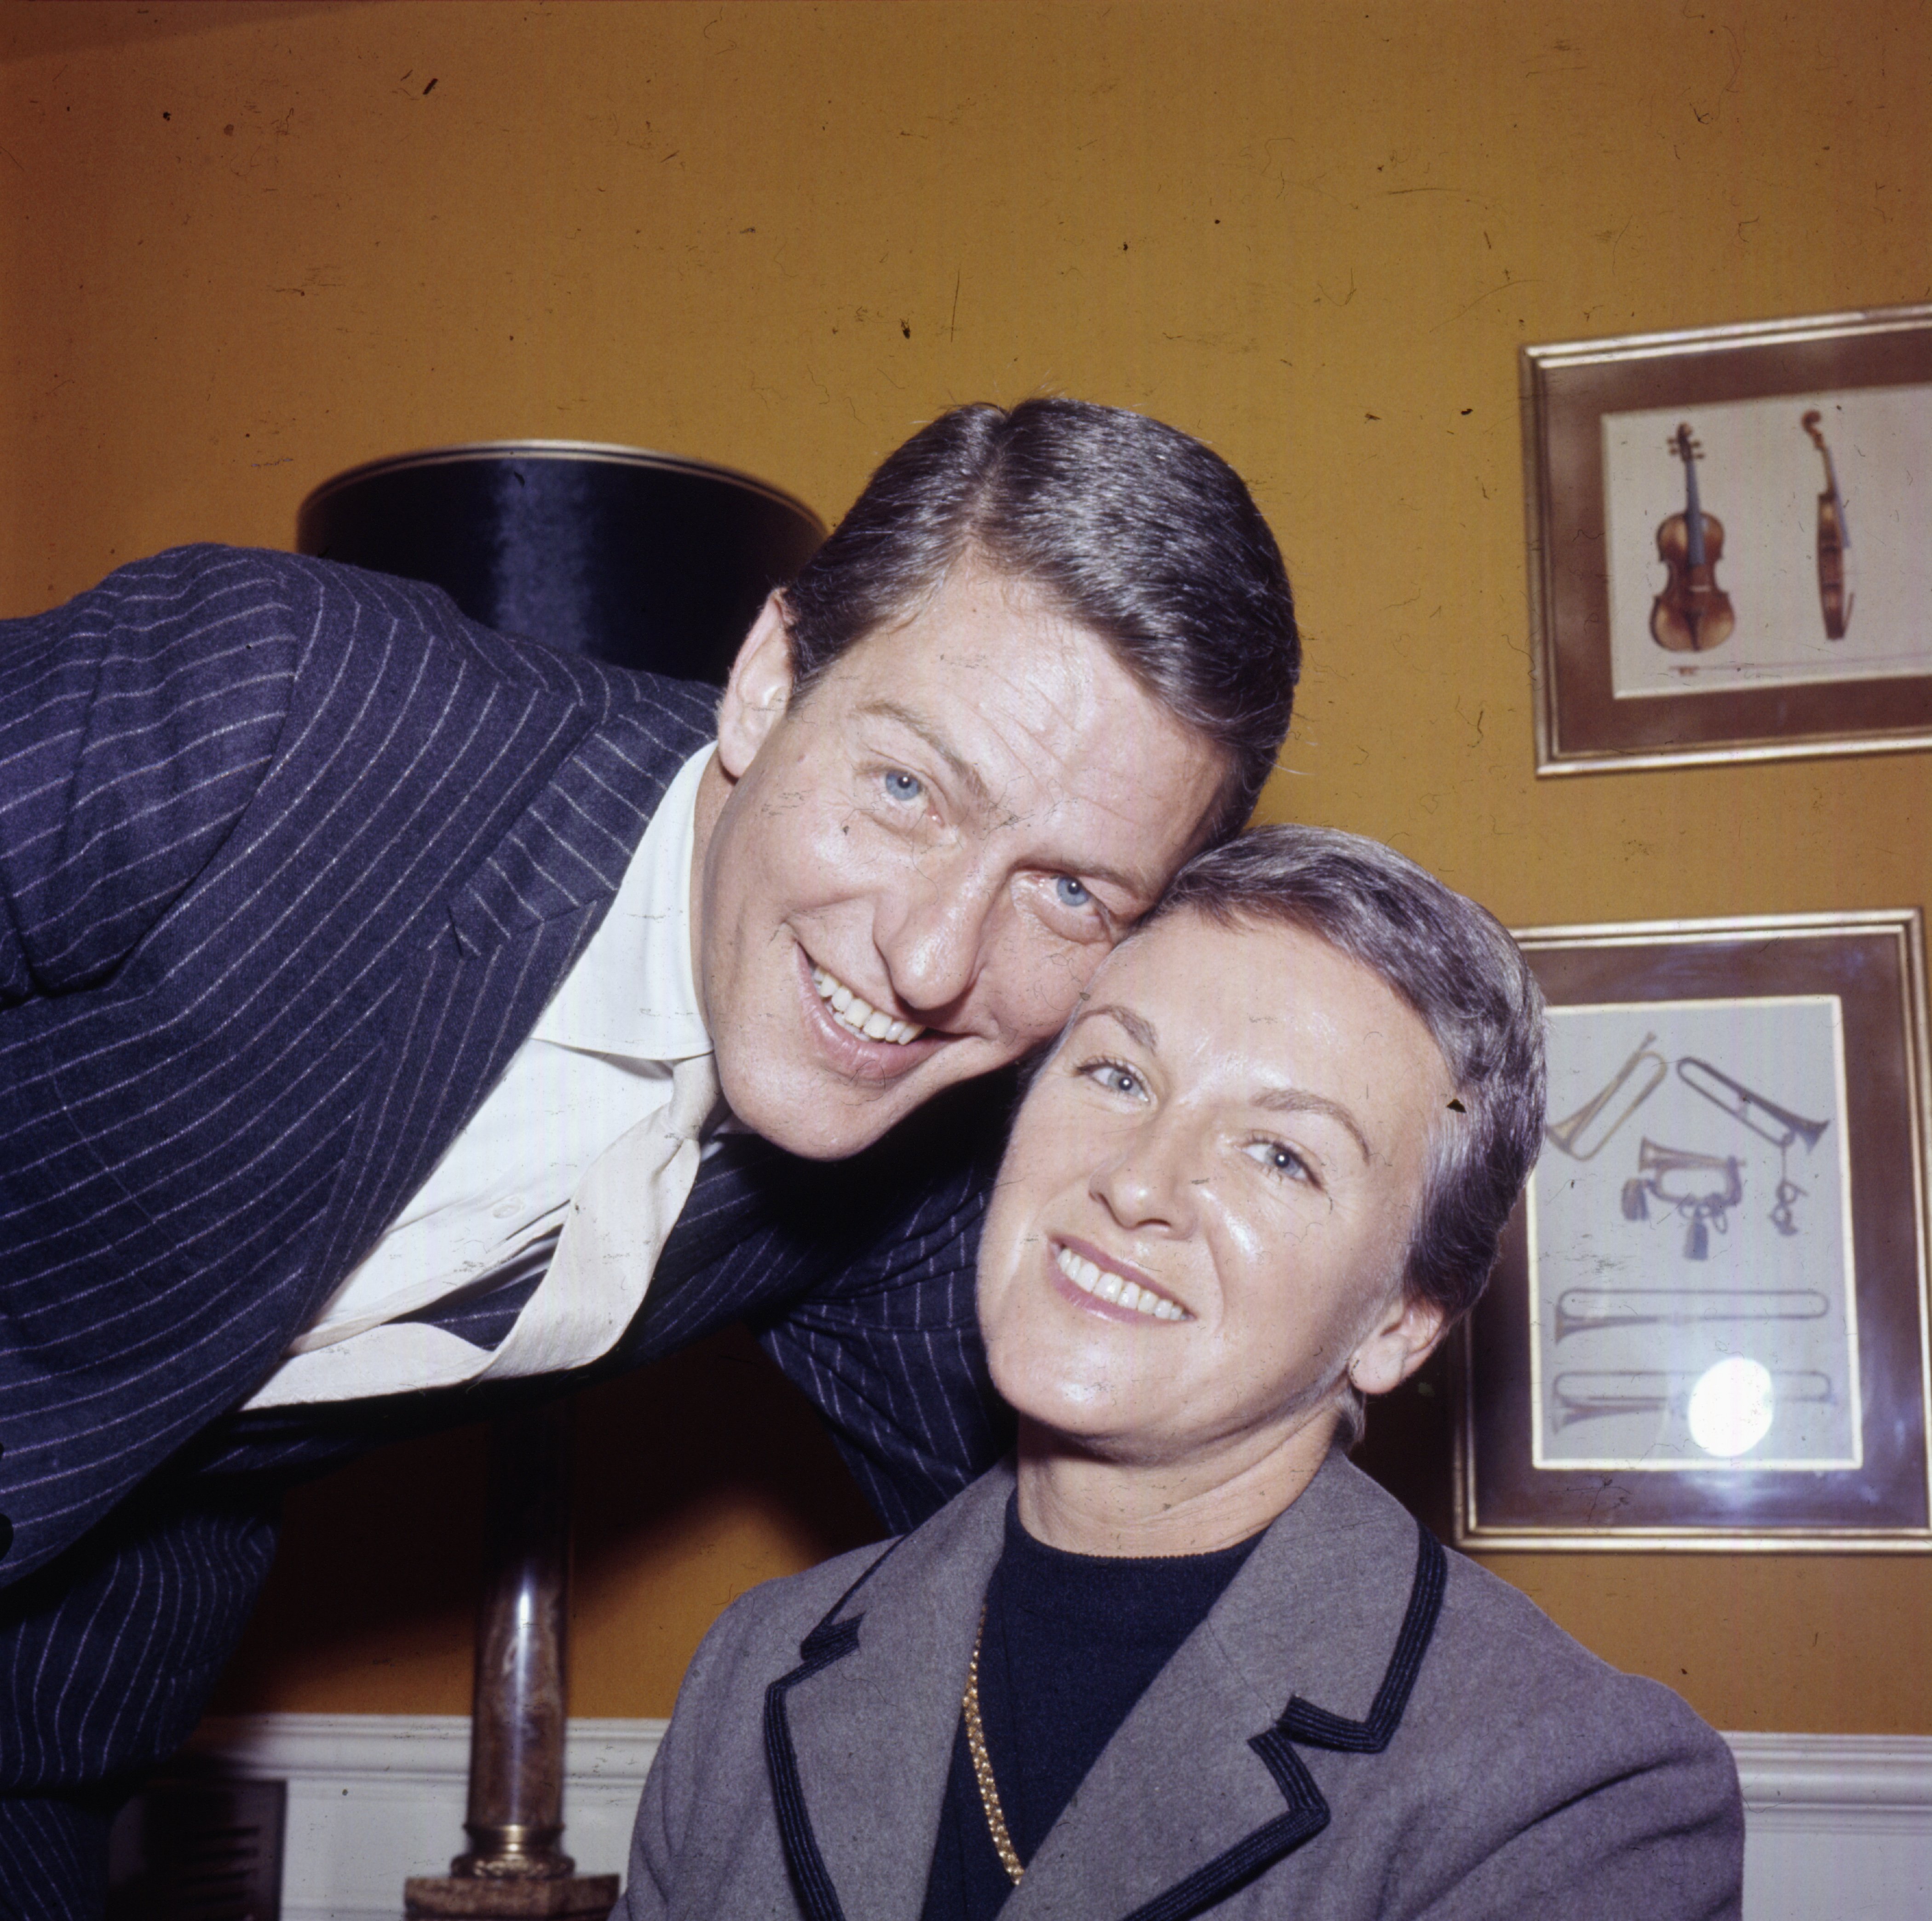 El actor estadounidense Dick Van Dyke fue fotografiado con su esposa Margie Willett en Londres, en 1964. | Foto: Getty Images